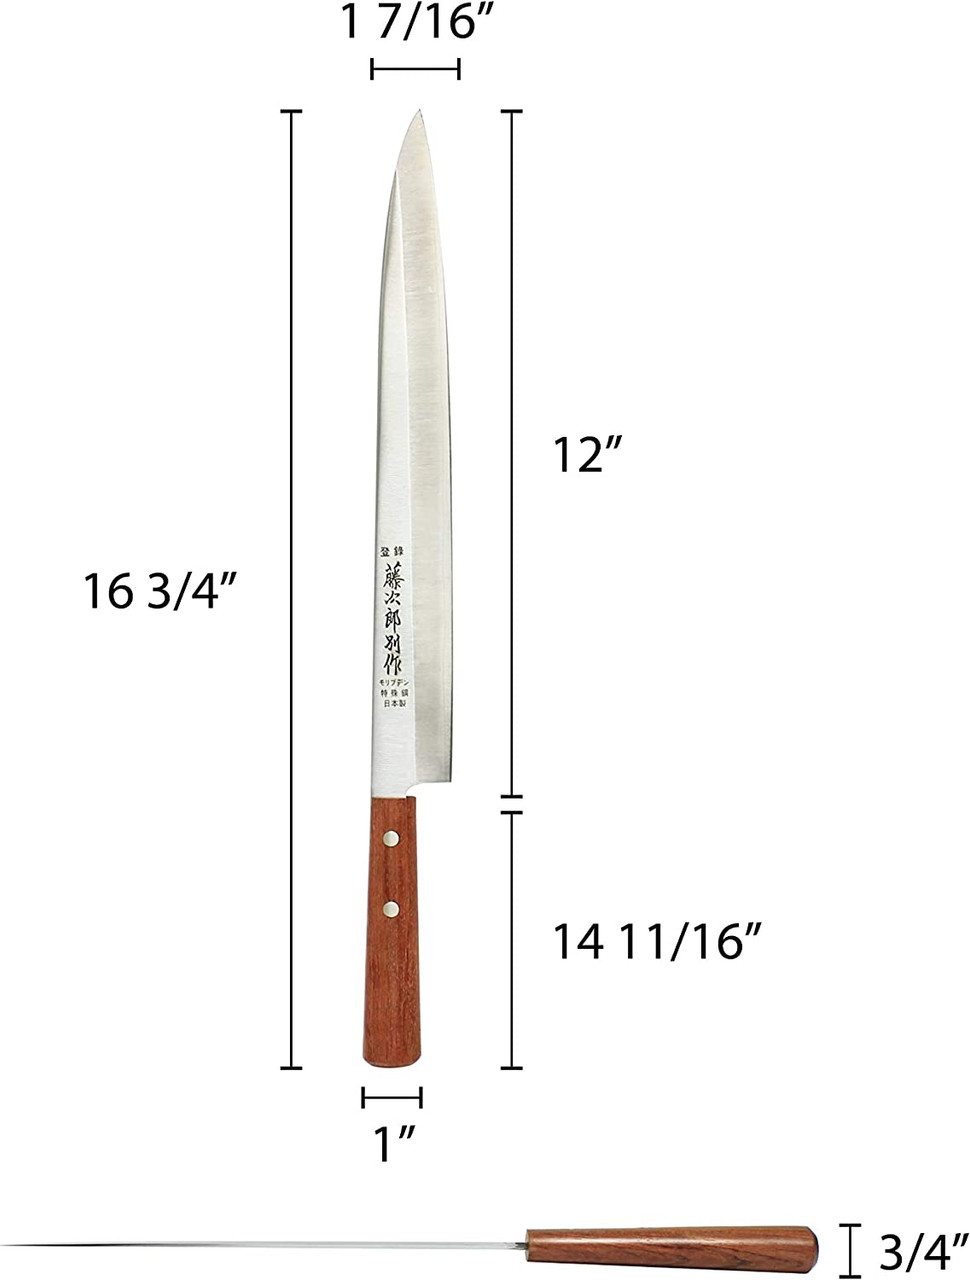 Buy Sashimi Knives  Japanese Sushi Knife